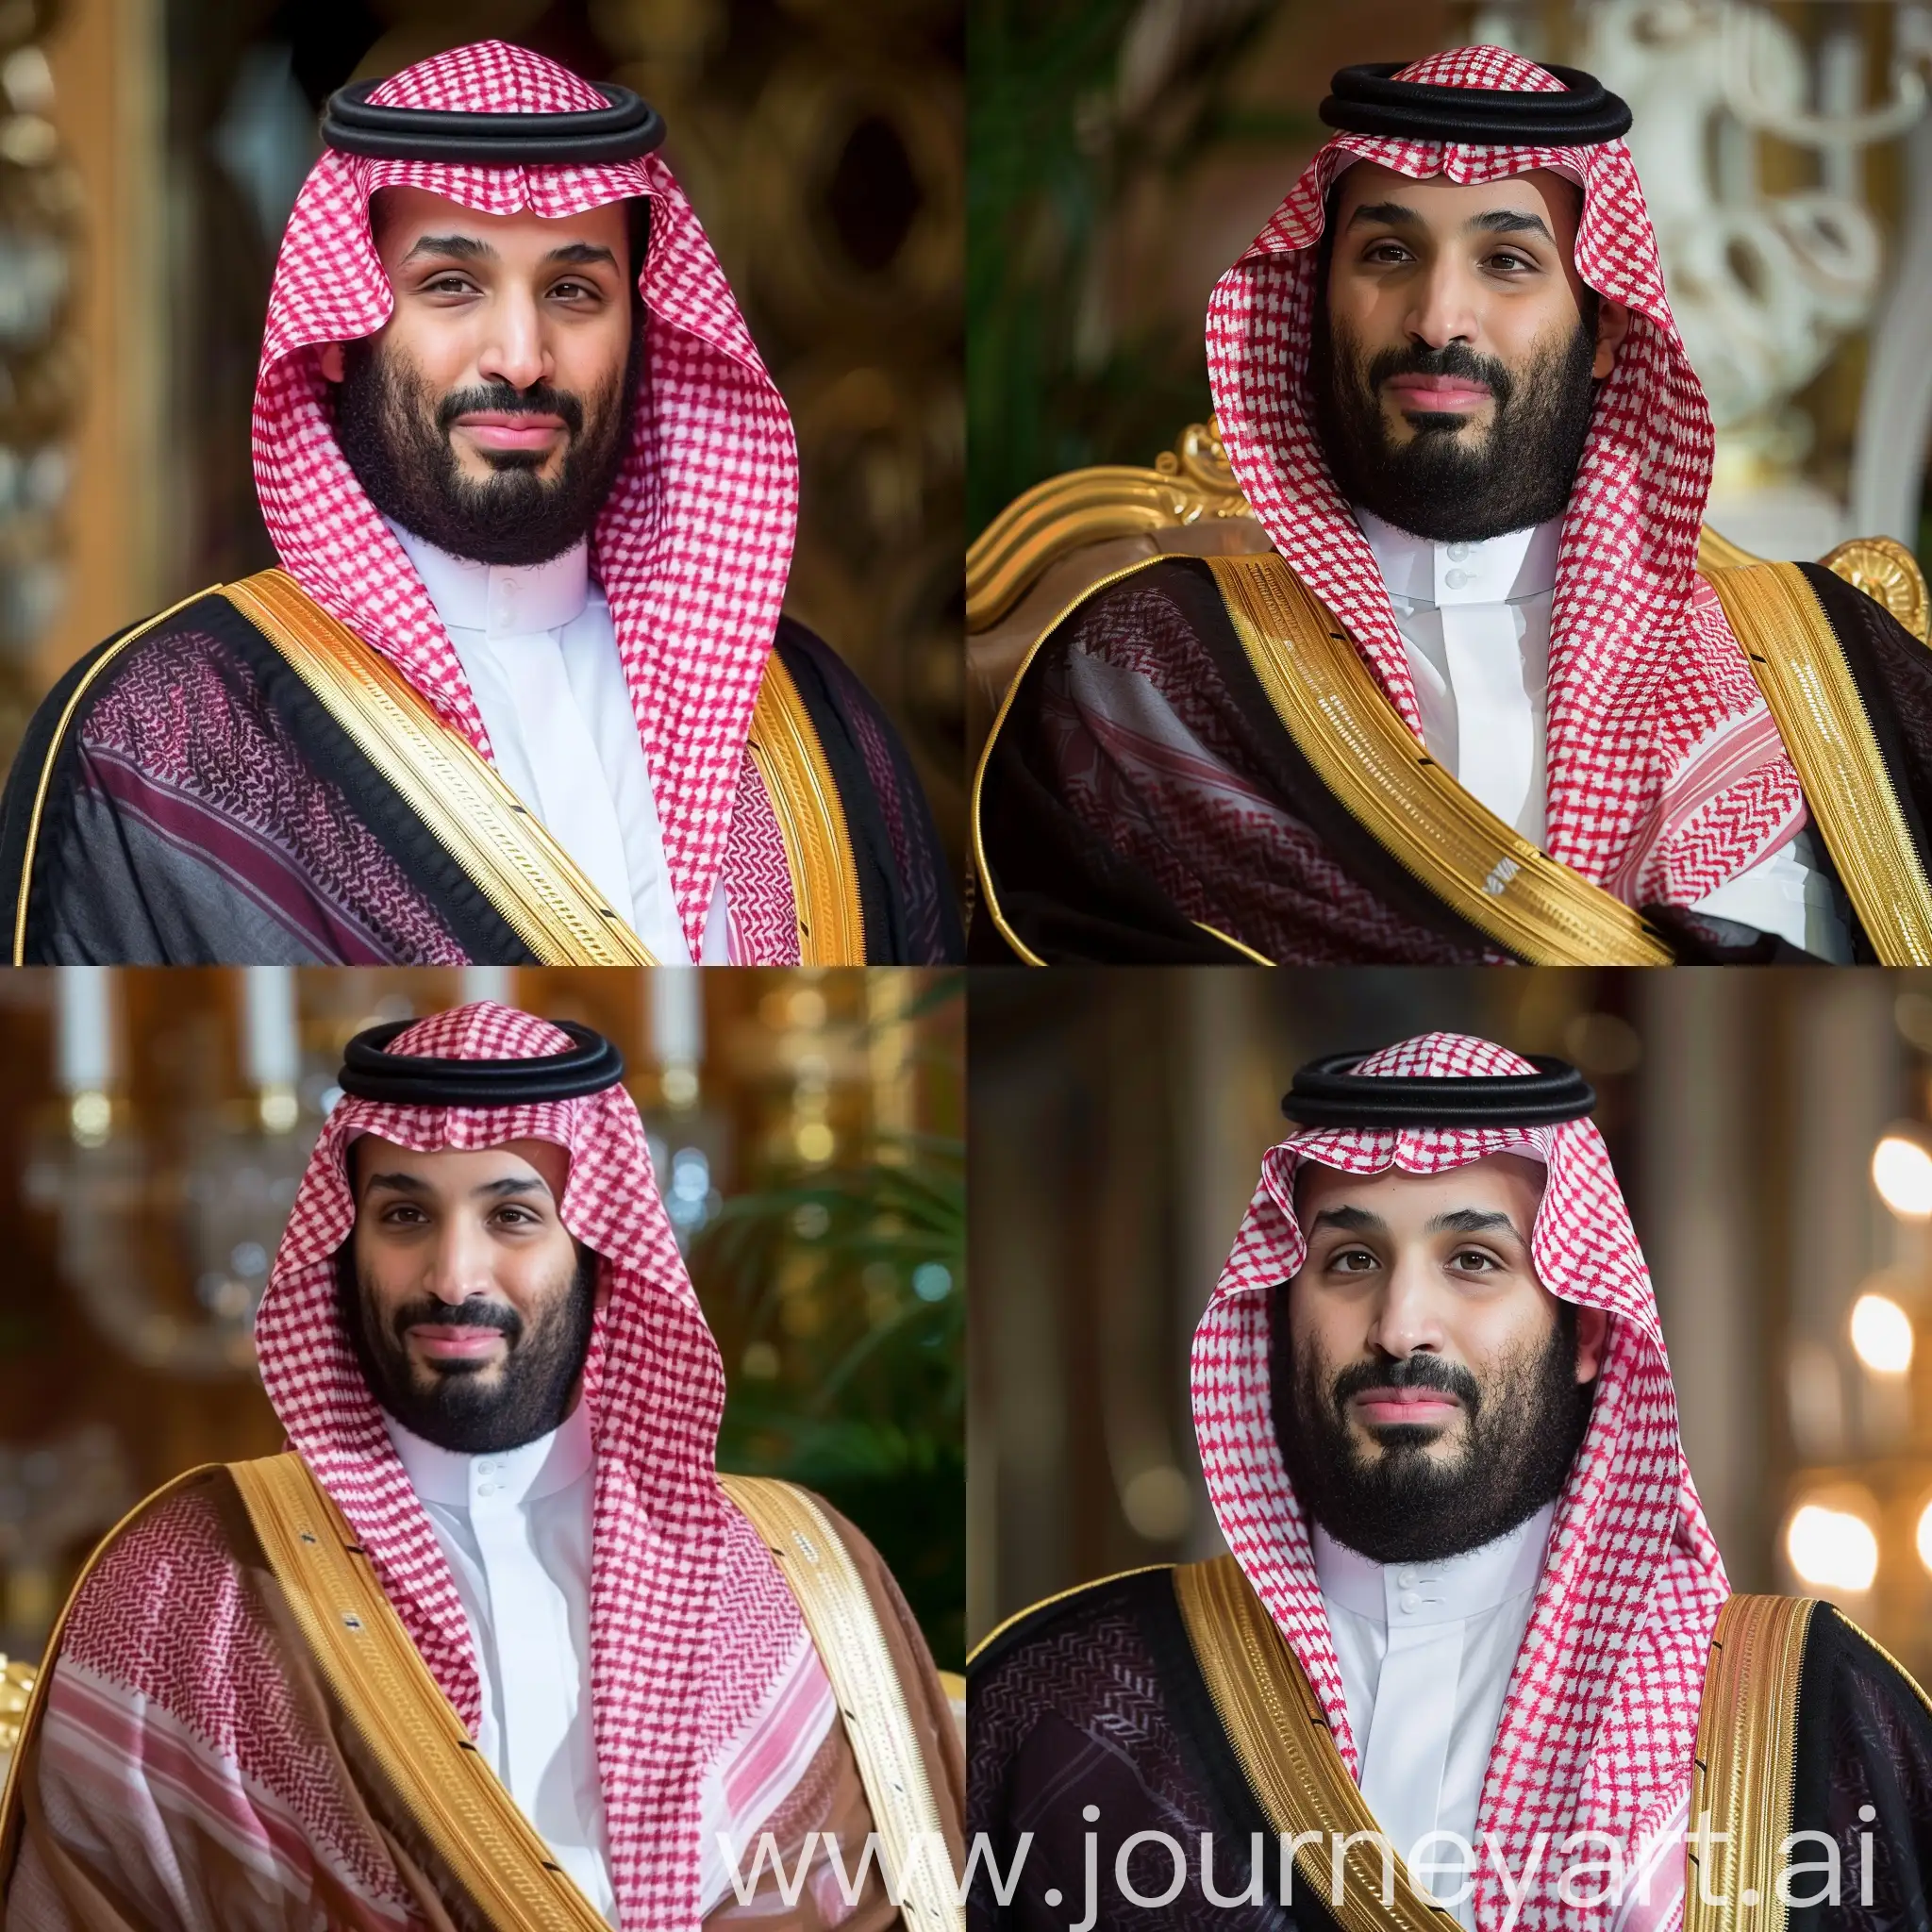 Prince-Mohammed-bin-Salman-Portrait-in-11-Aspect-Ratio